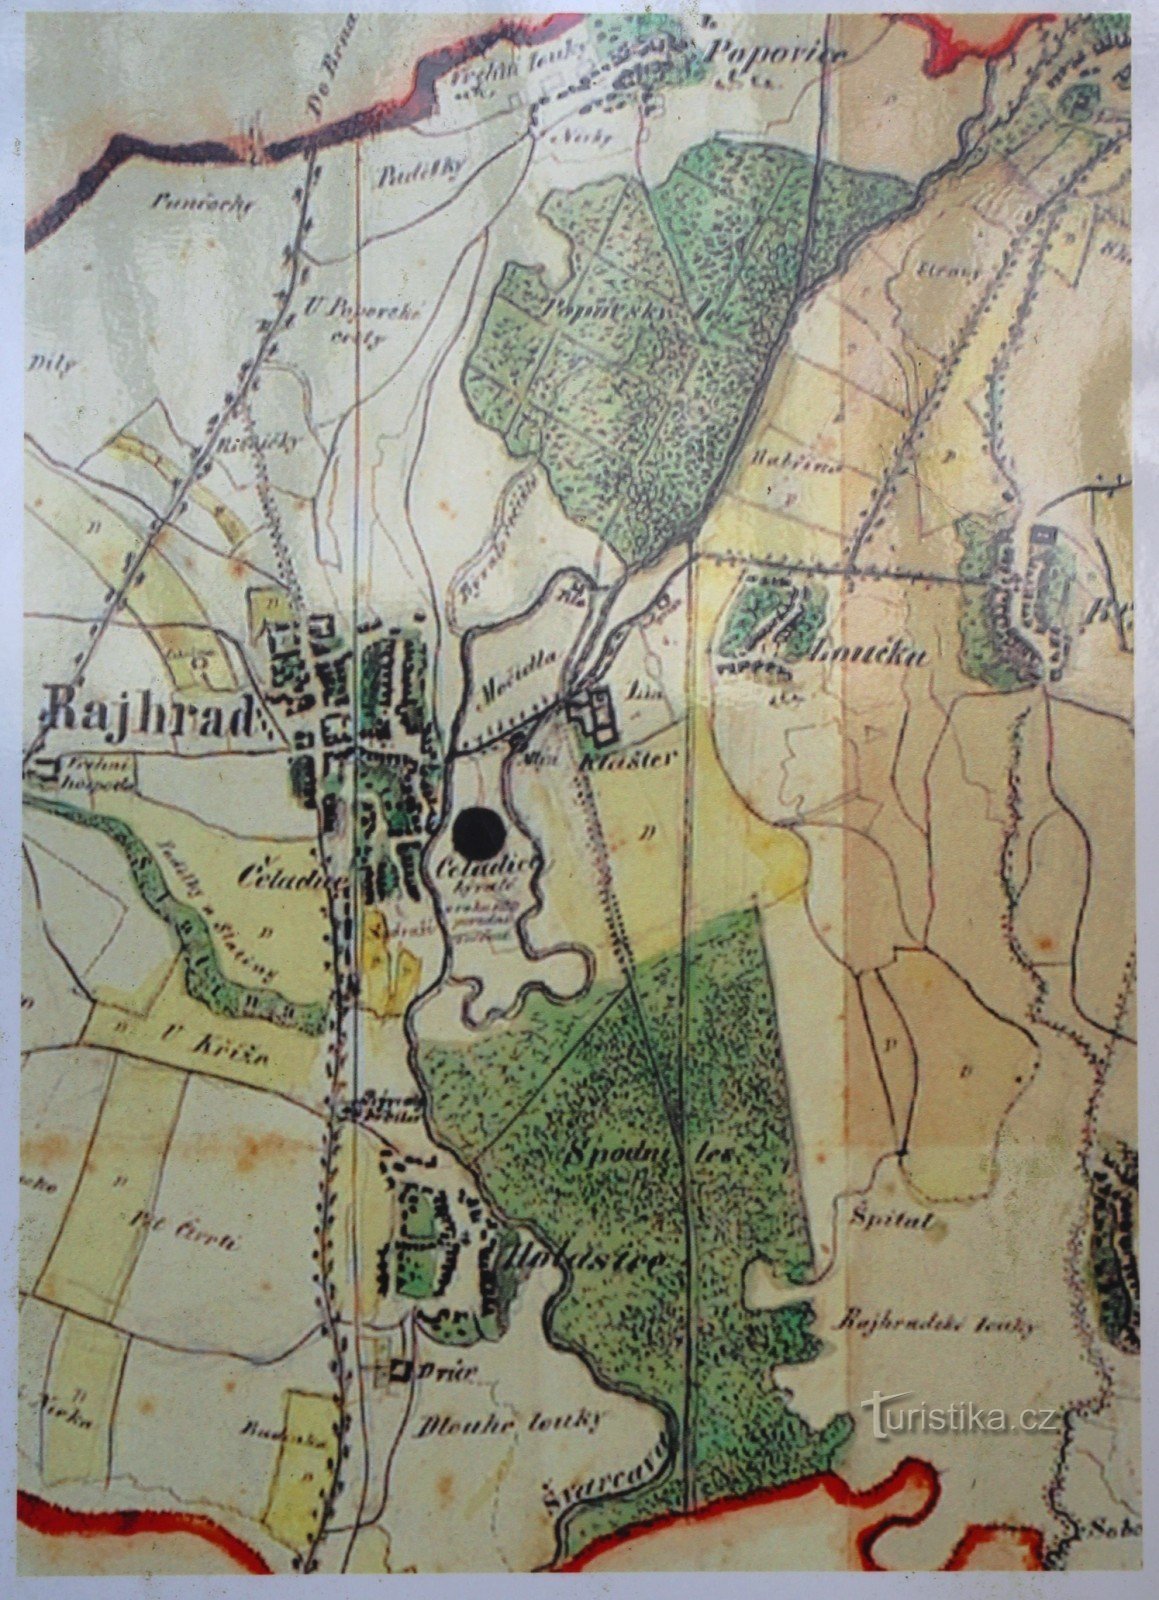 Mapa otoczenia klasztoru z połowy XIX wieku, wyraźnie widoczna w dolnej połowie mapy